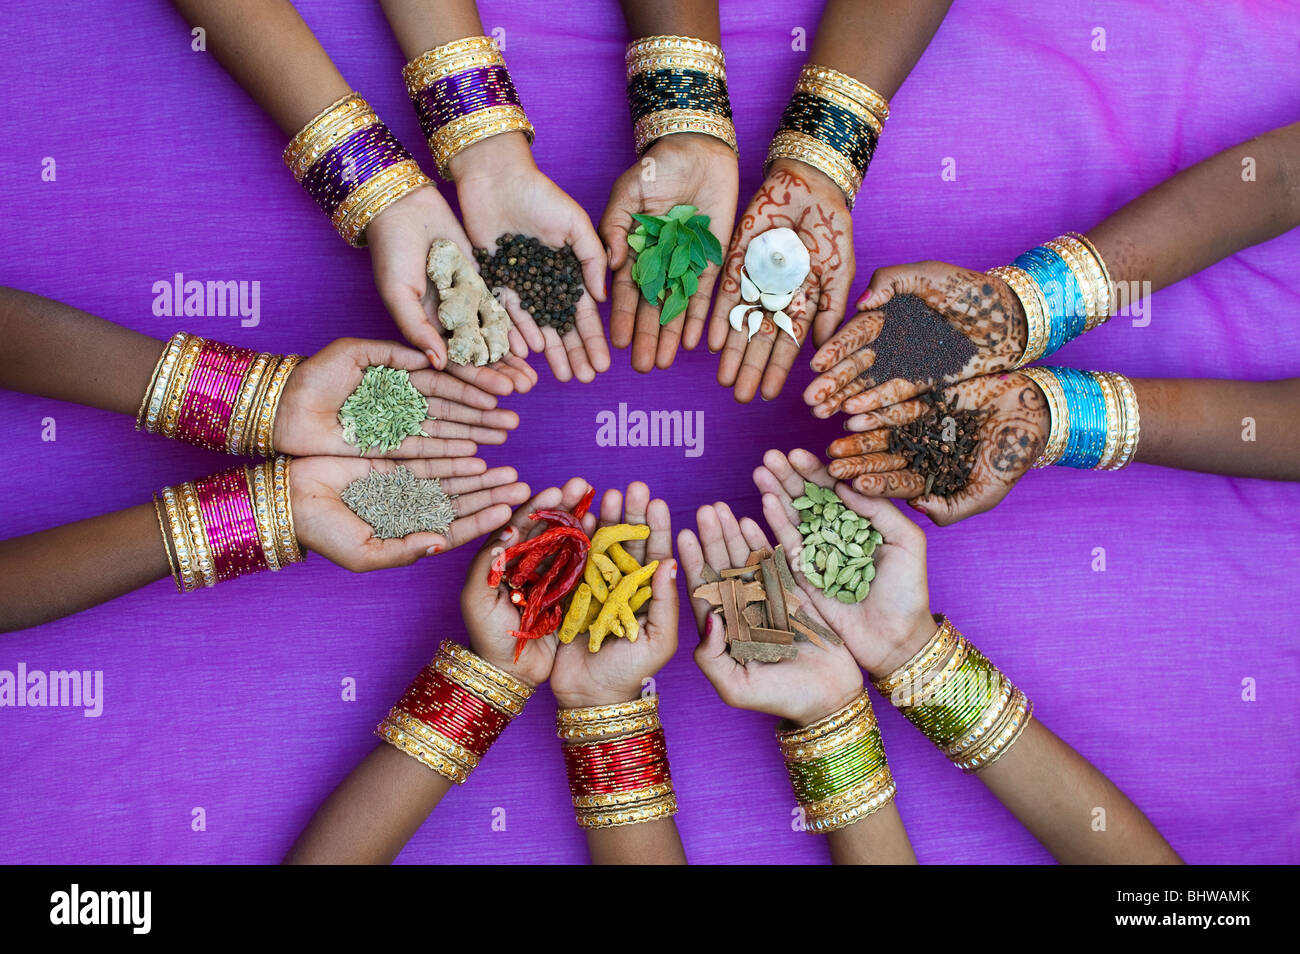 Enfants indiens mains tenant divers cuisine indienne épices contre un fond violet. L'Inde Banque D'Images